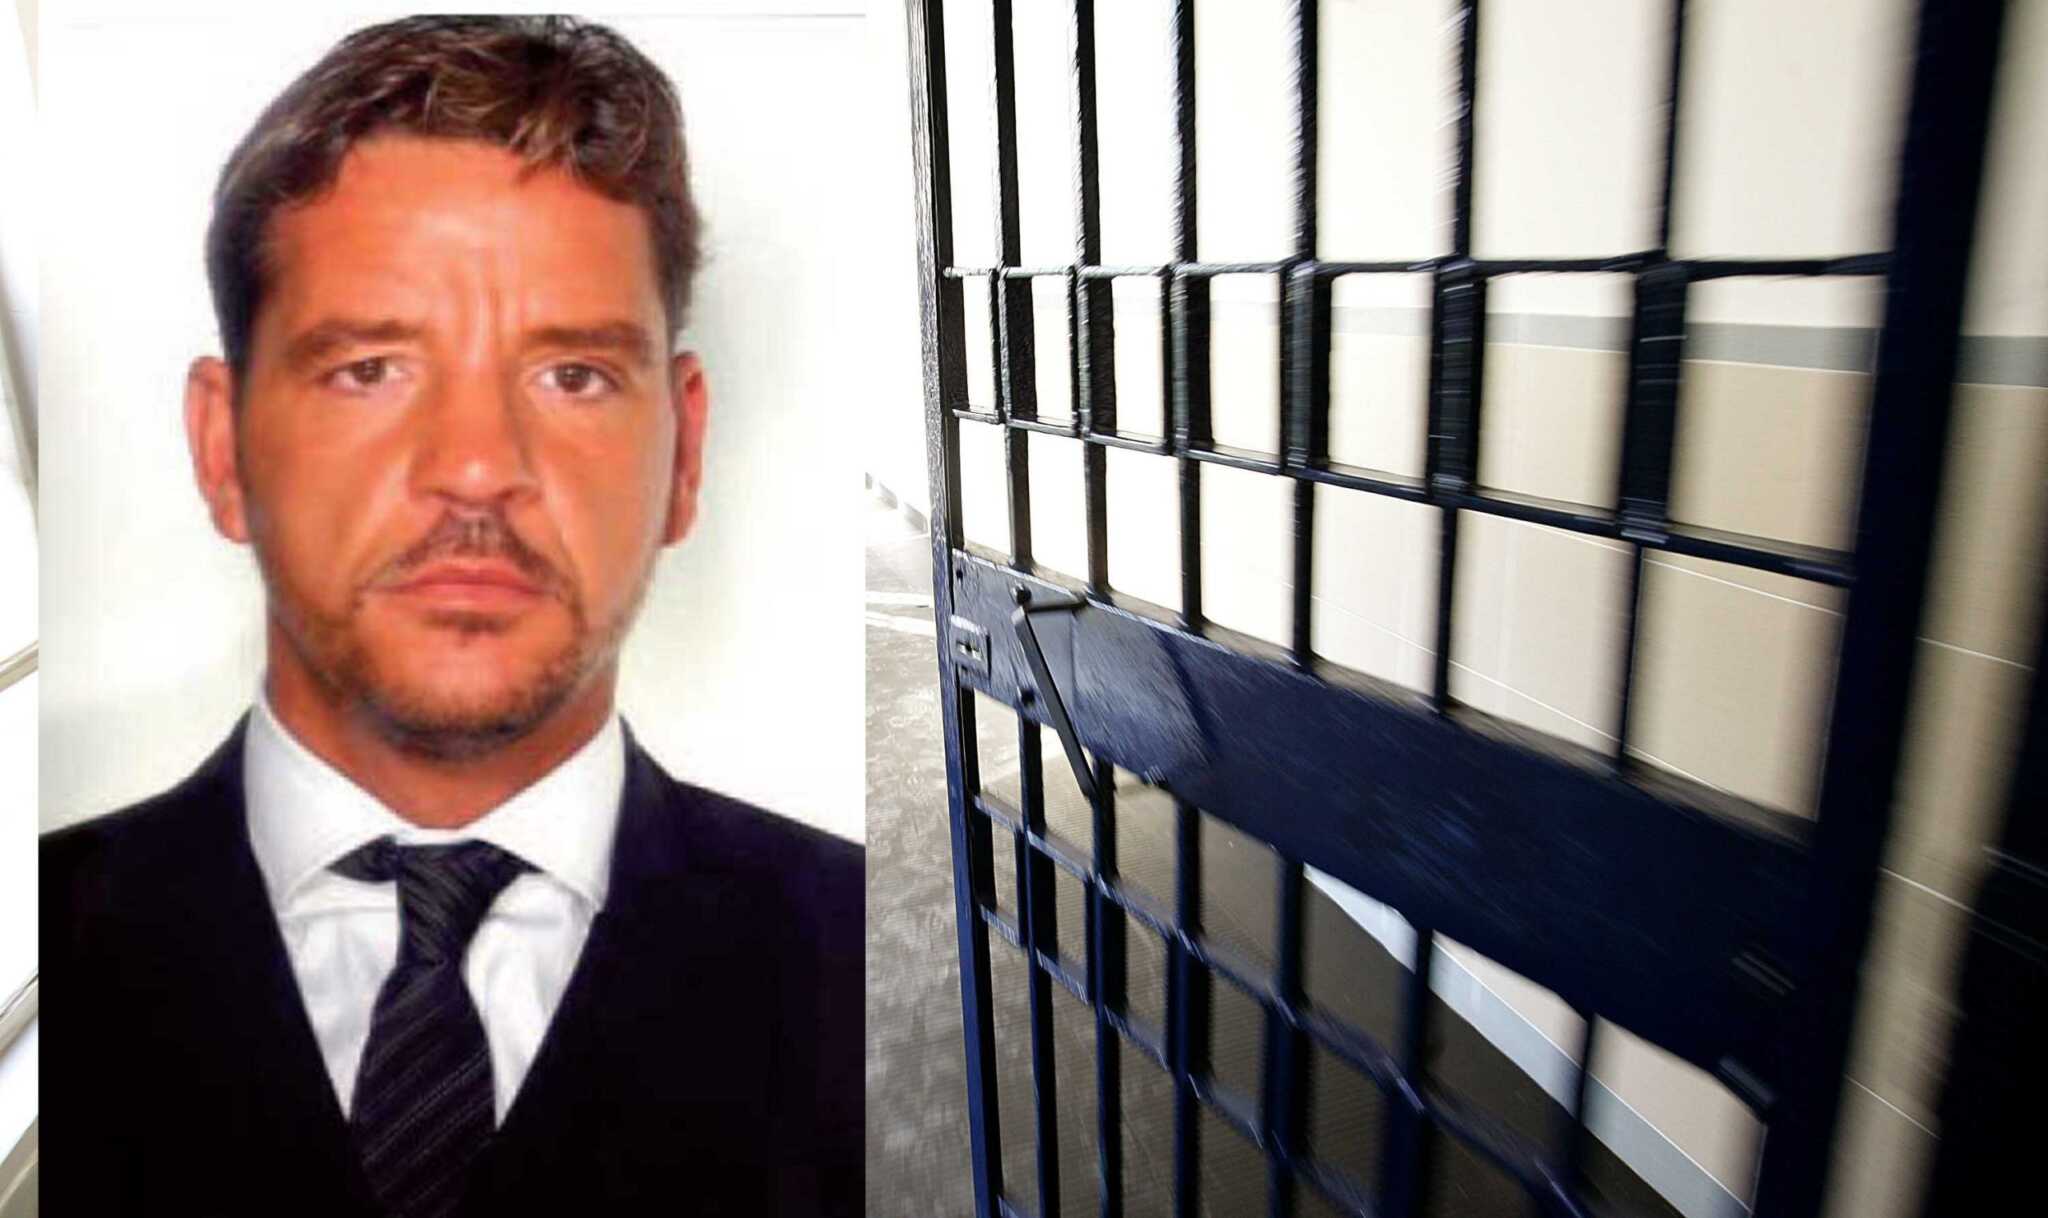 Napoli, giustizia lenta: libero il boss Nicola Rullo. Ora è sorvegliato per evitare che fugga